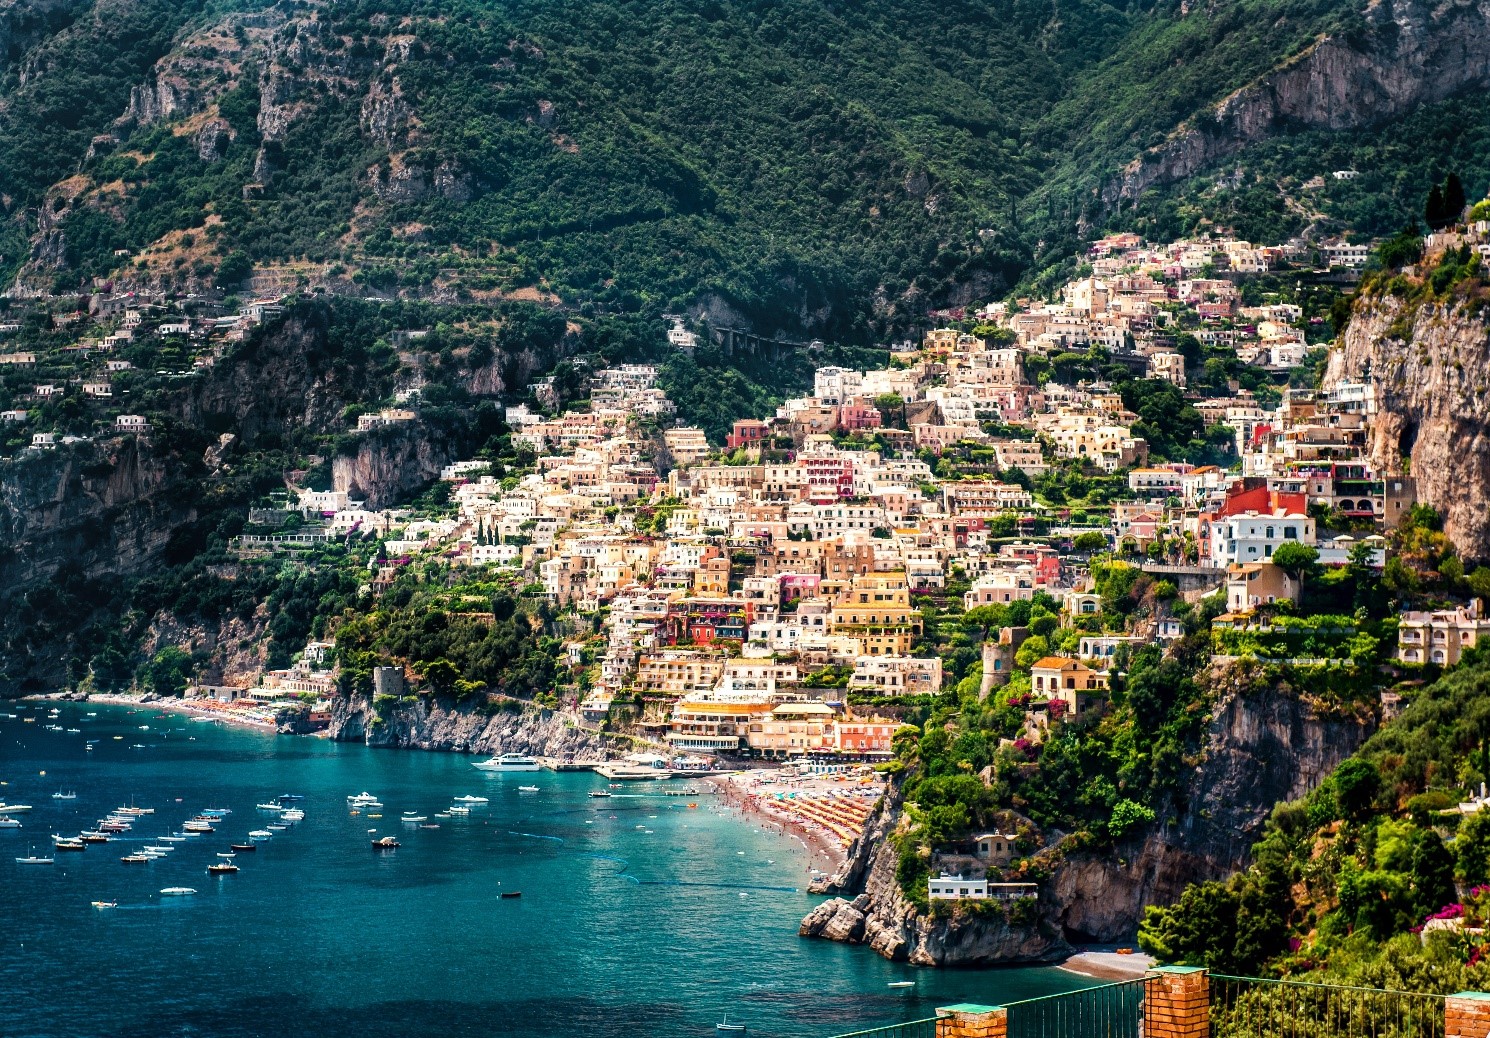 A encantadora cidade de Positano, com suas casinhas coloridas construídas sobre o penhasco.